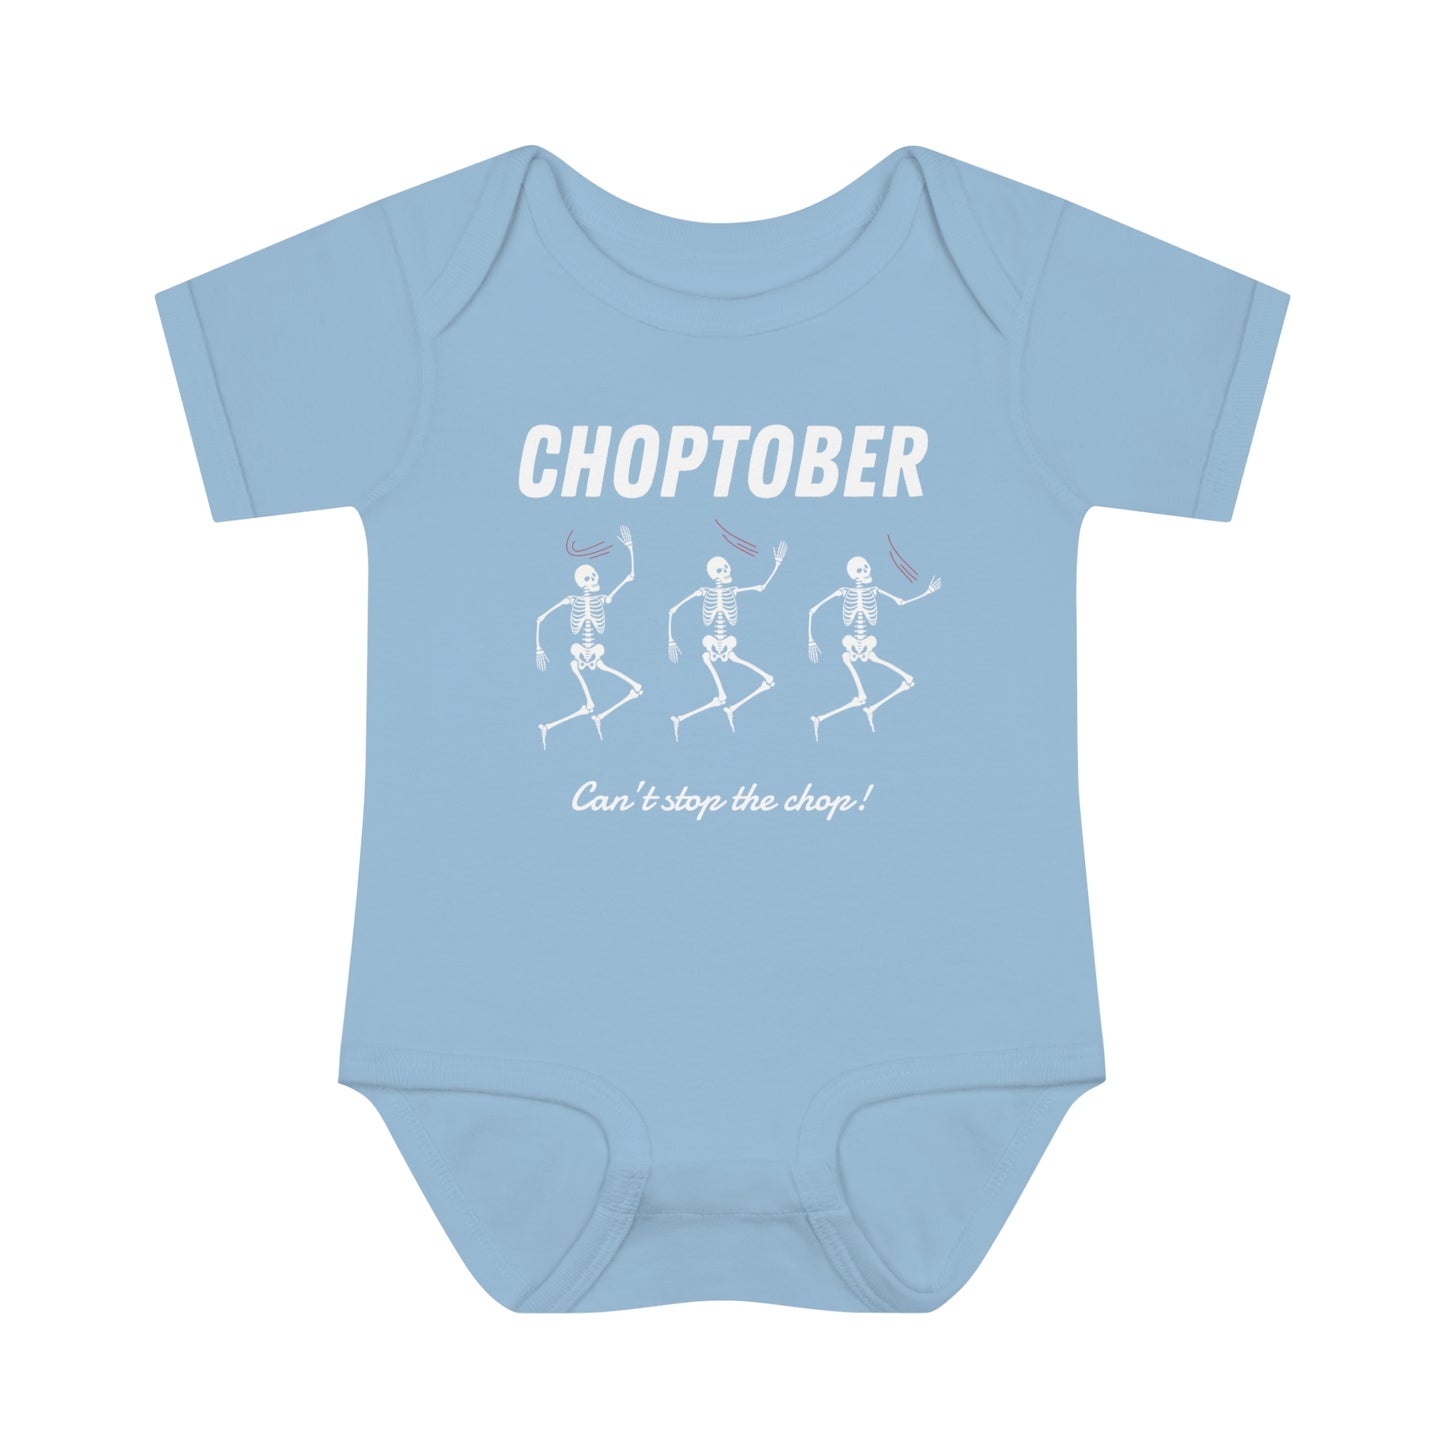 Atlanta Braves "Choptober" Baby Onesie